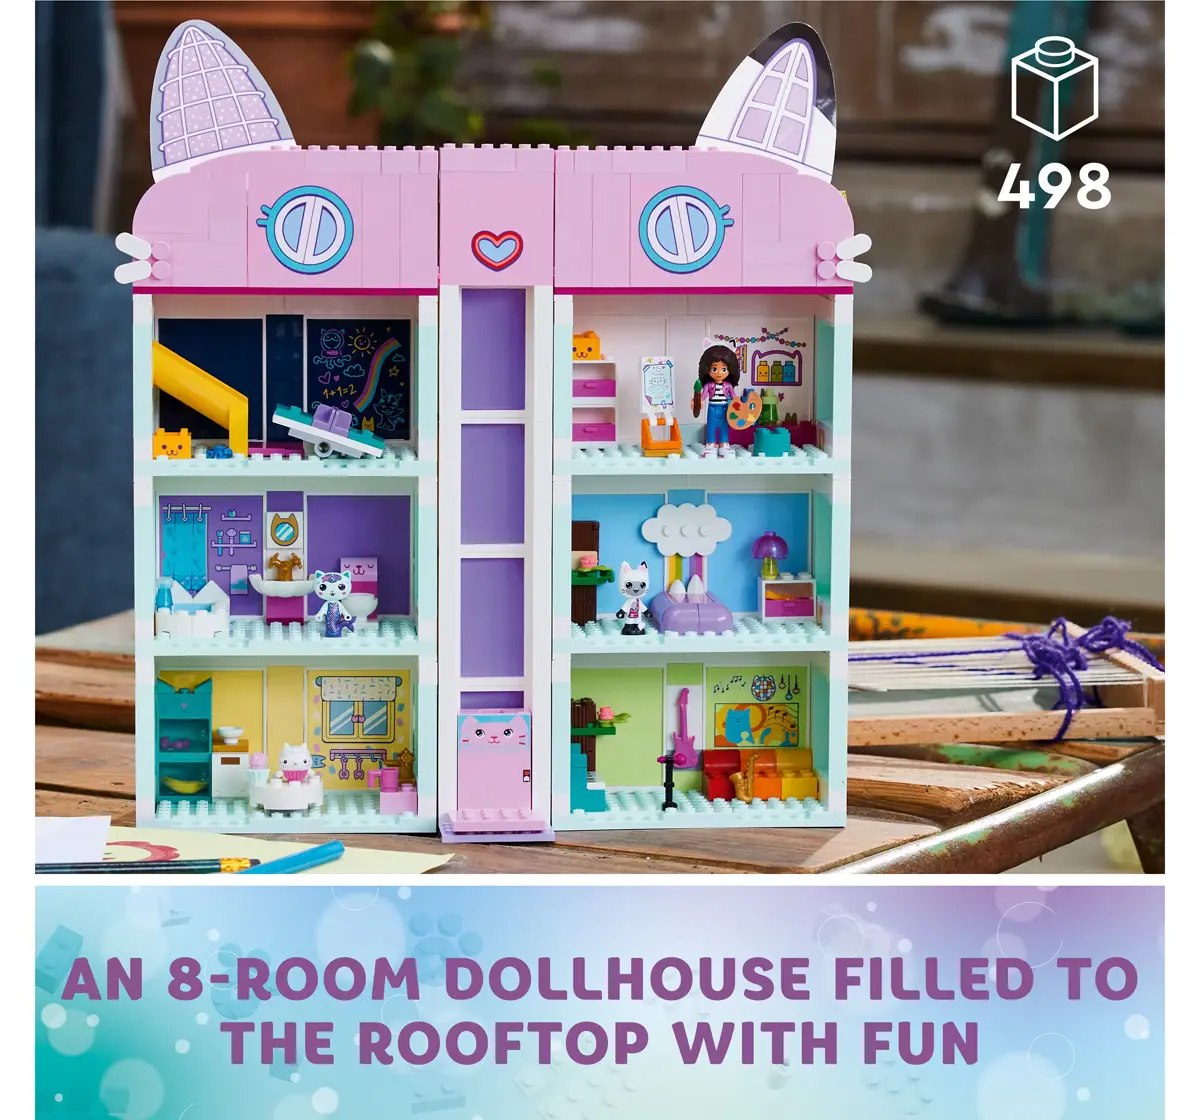 LEGO Gabbys Dollhouse 10788 Building Toy Set (498 Pieces), 4Y+